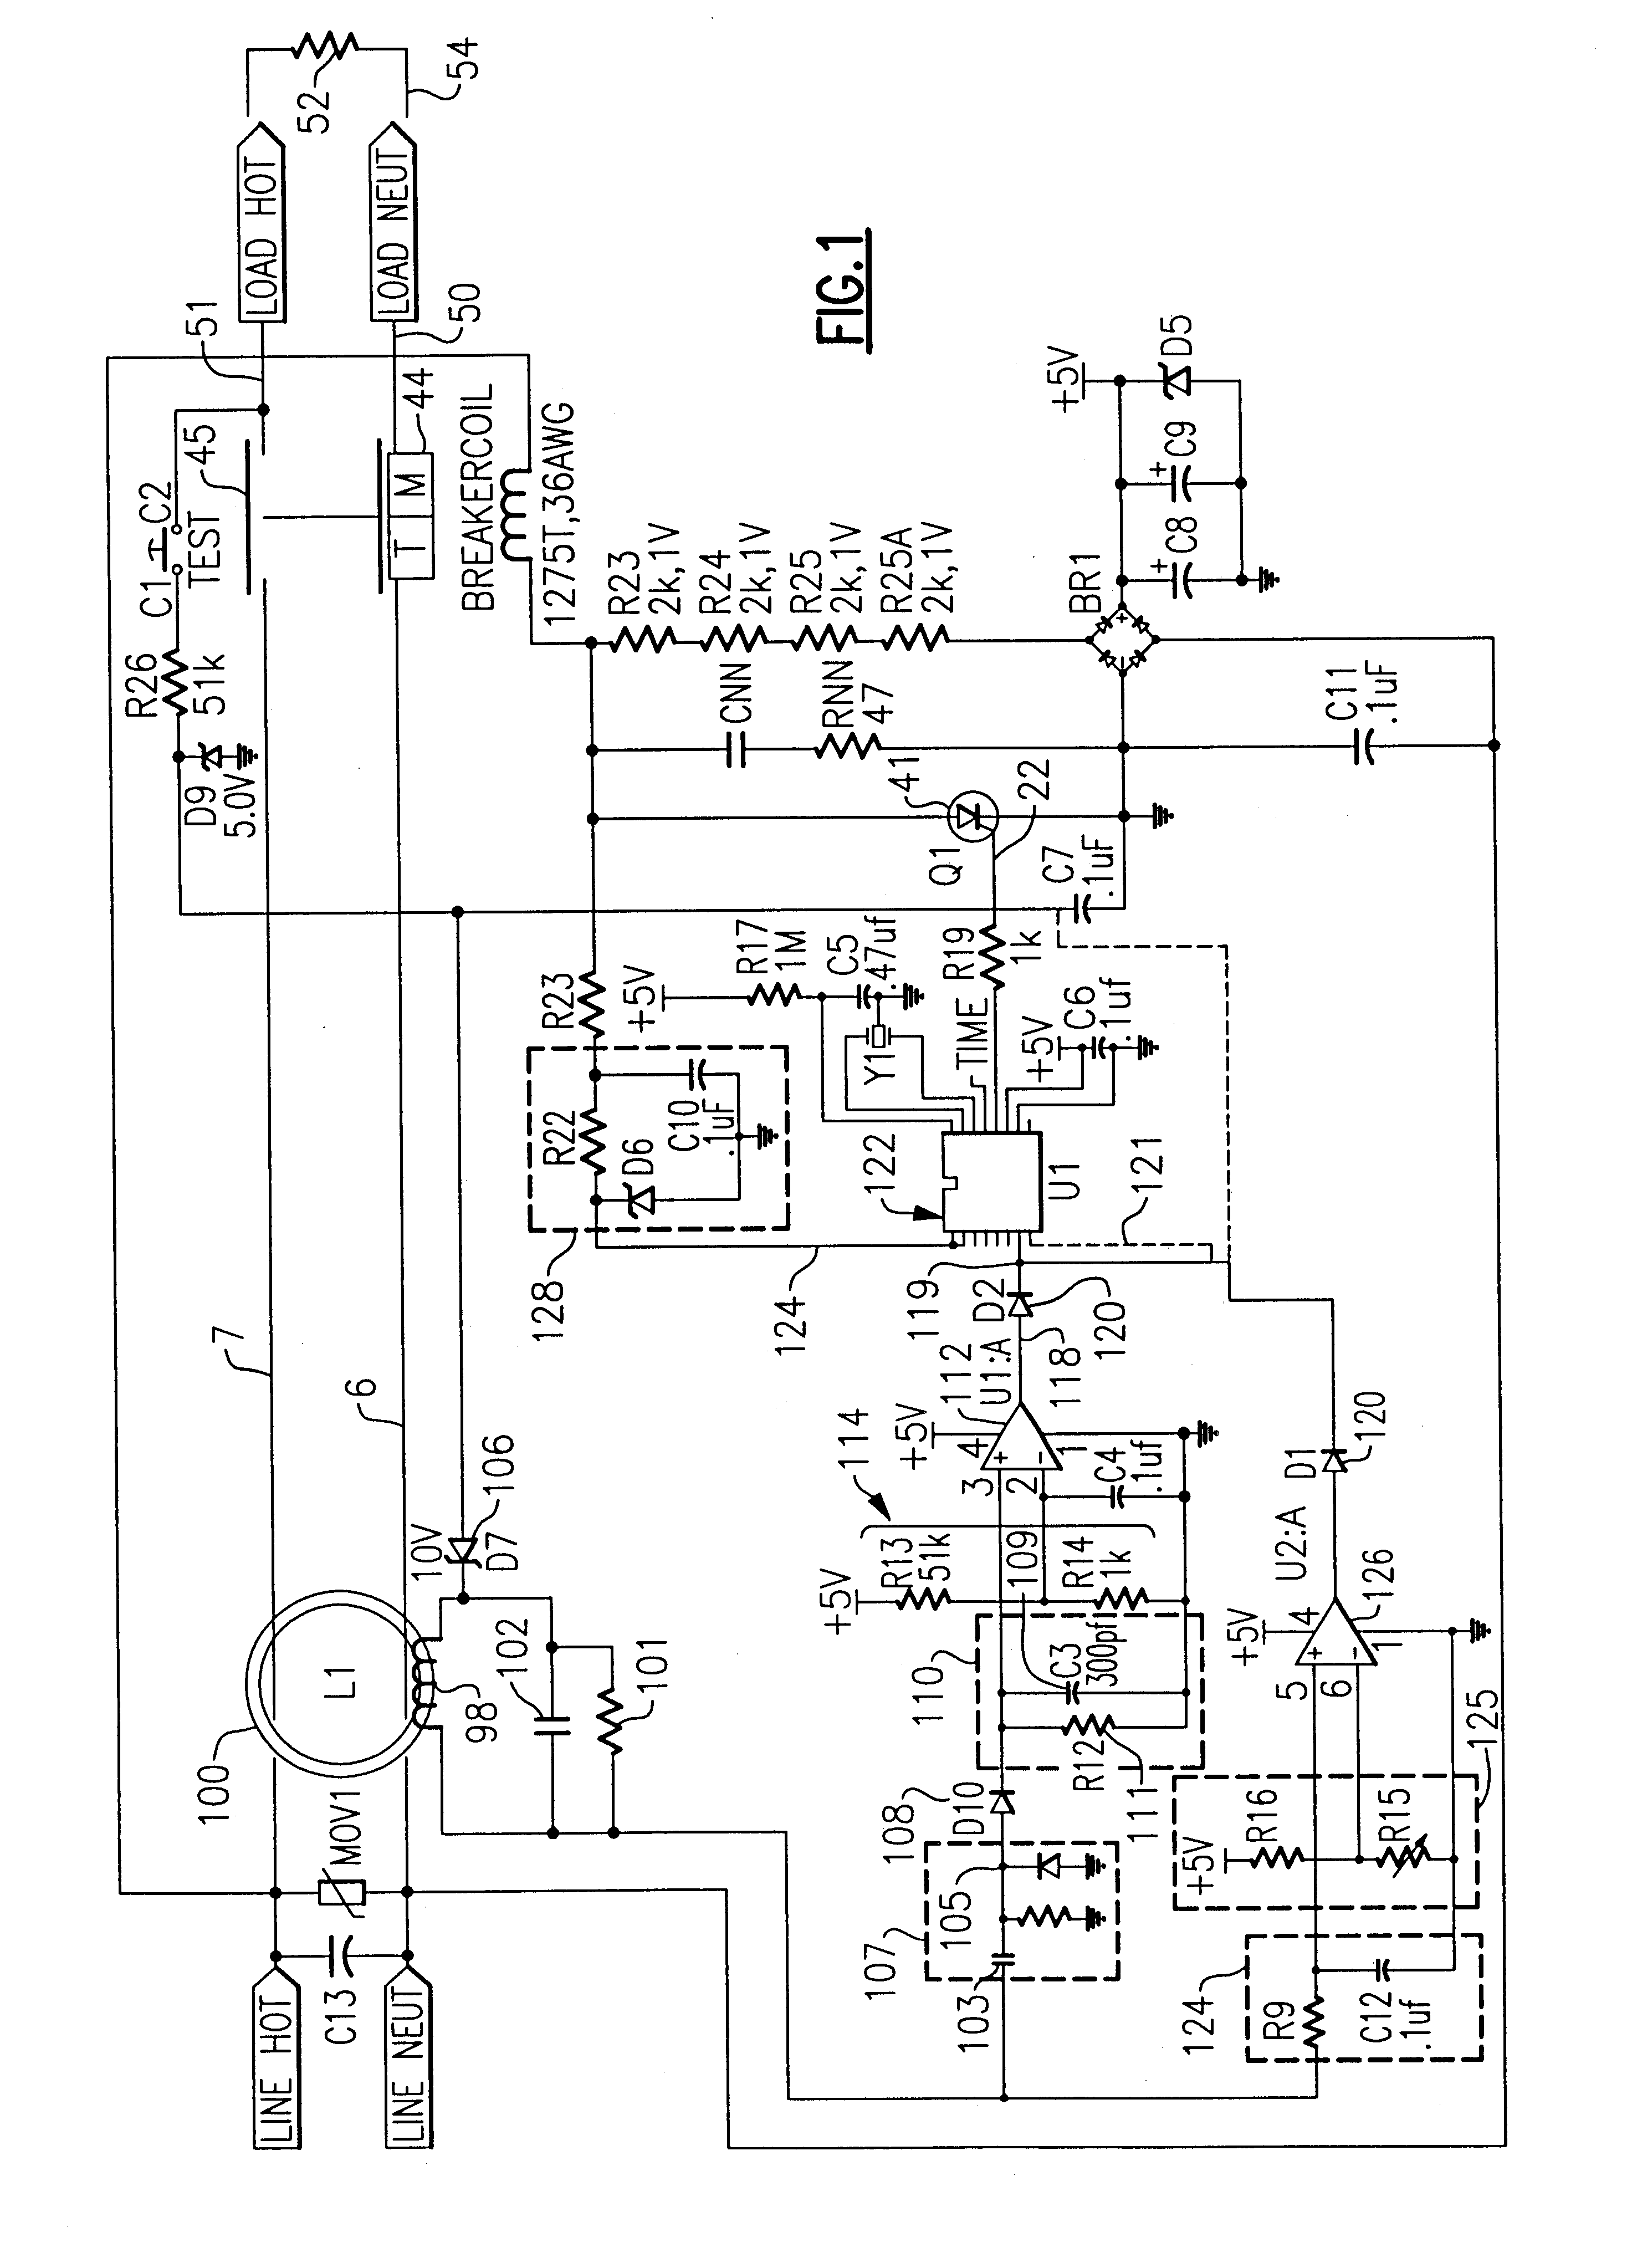 Arc fault circuit interrupter recognizing arc noise burst patterns